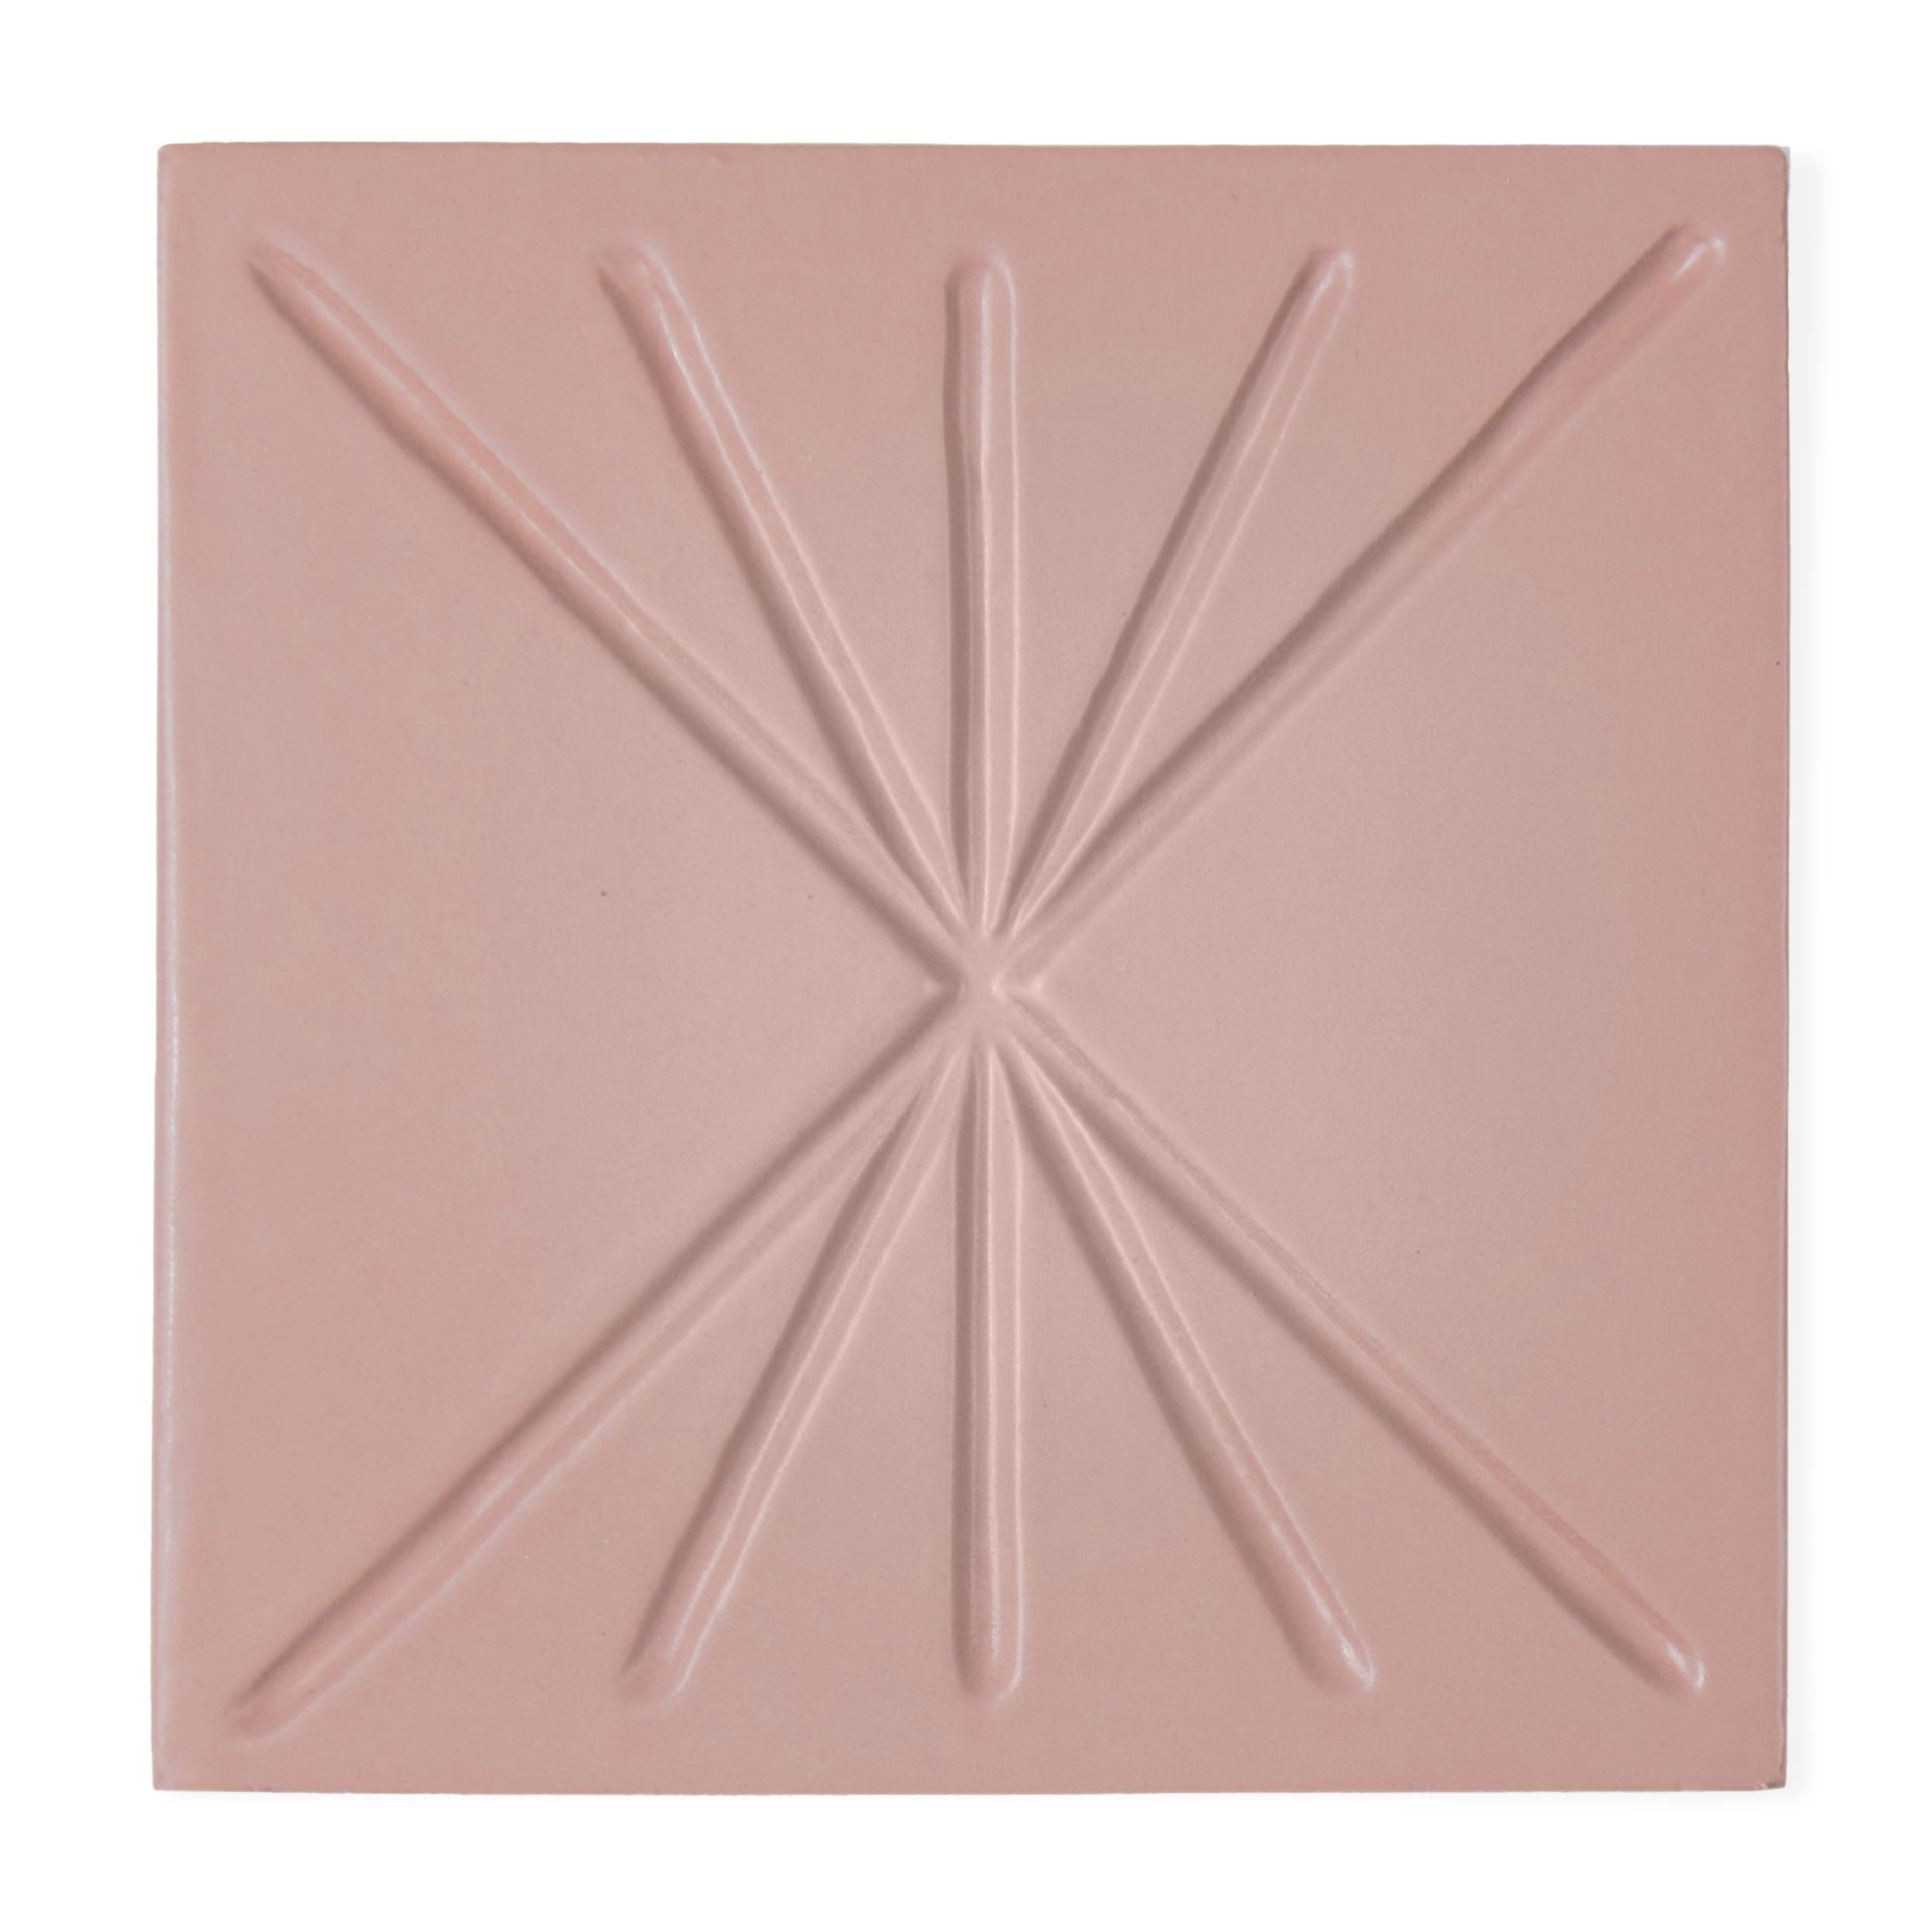 Ceramic Tile Dimensional Relief